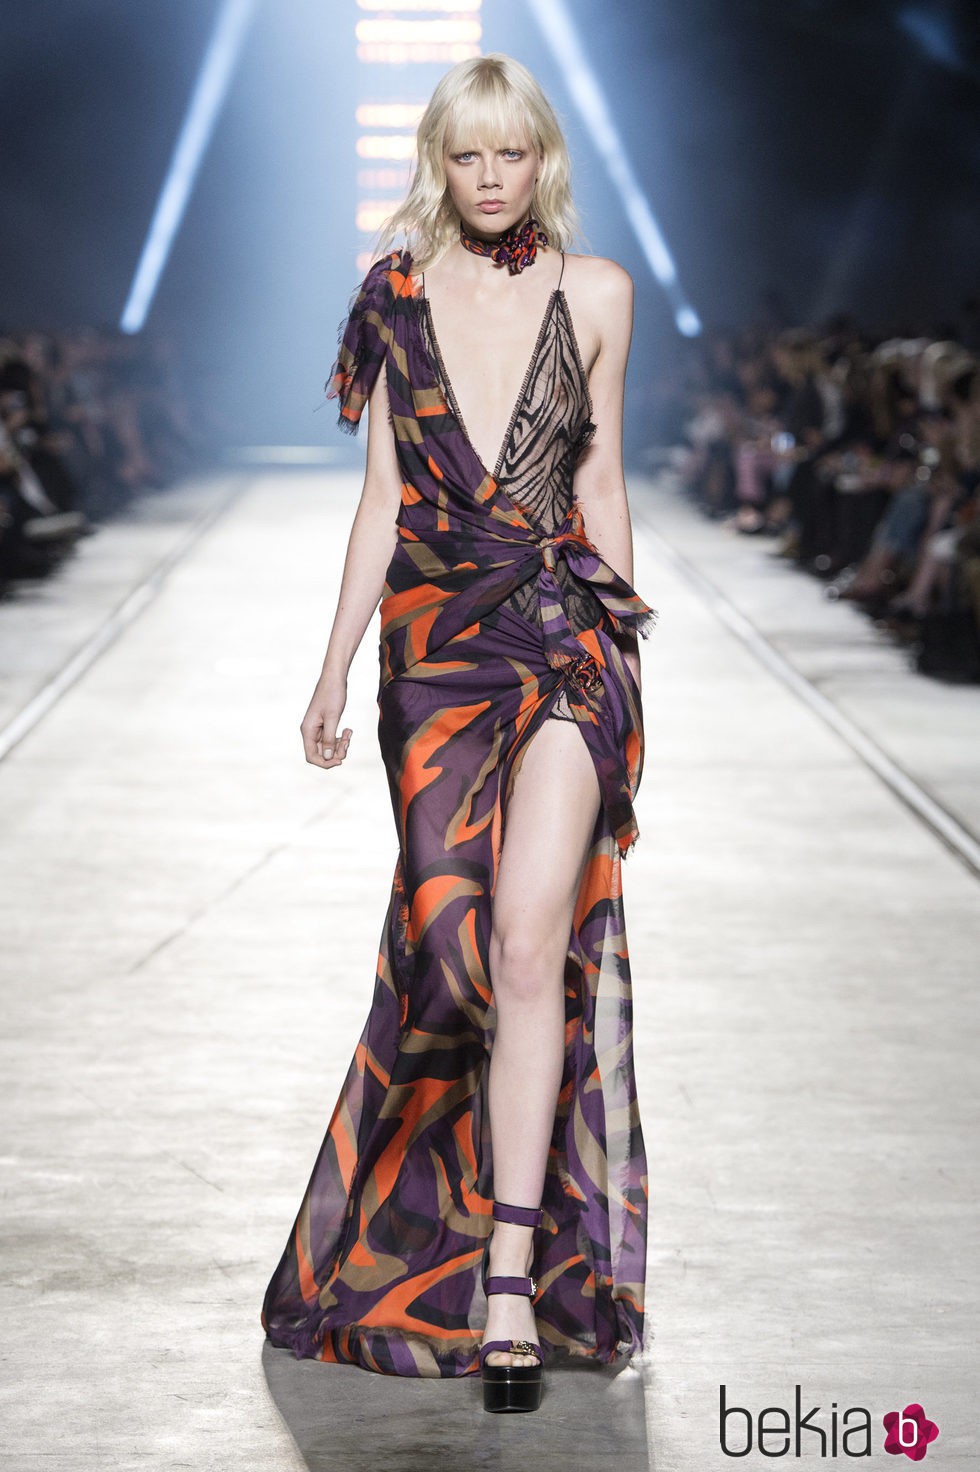 Vestido asimétrico de la colección primavera/verano 2016 de Versace en Milán Fashion Week